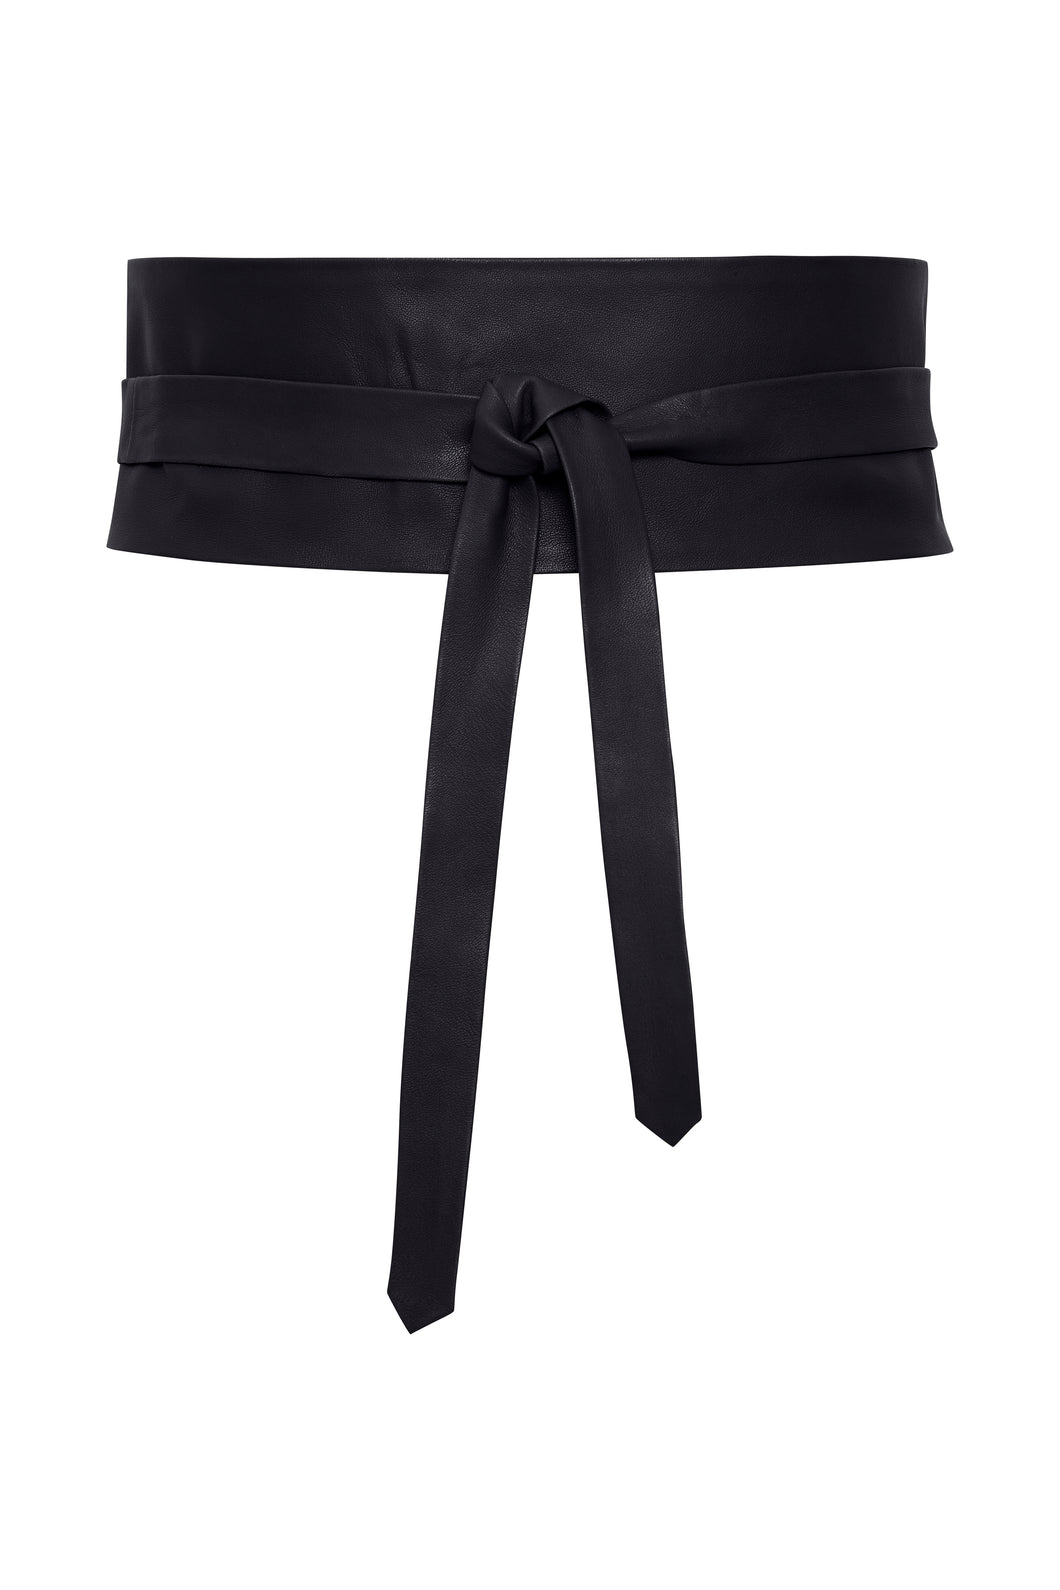 ICHI IAValdis Leather Waist Belt Black